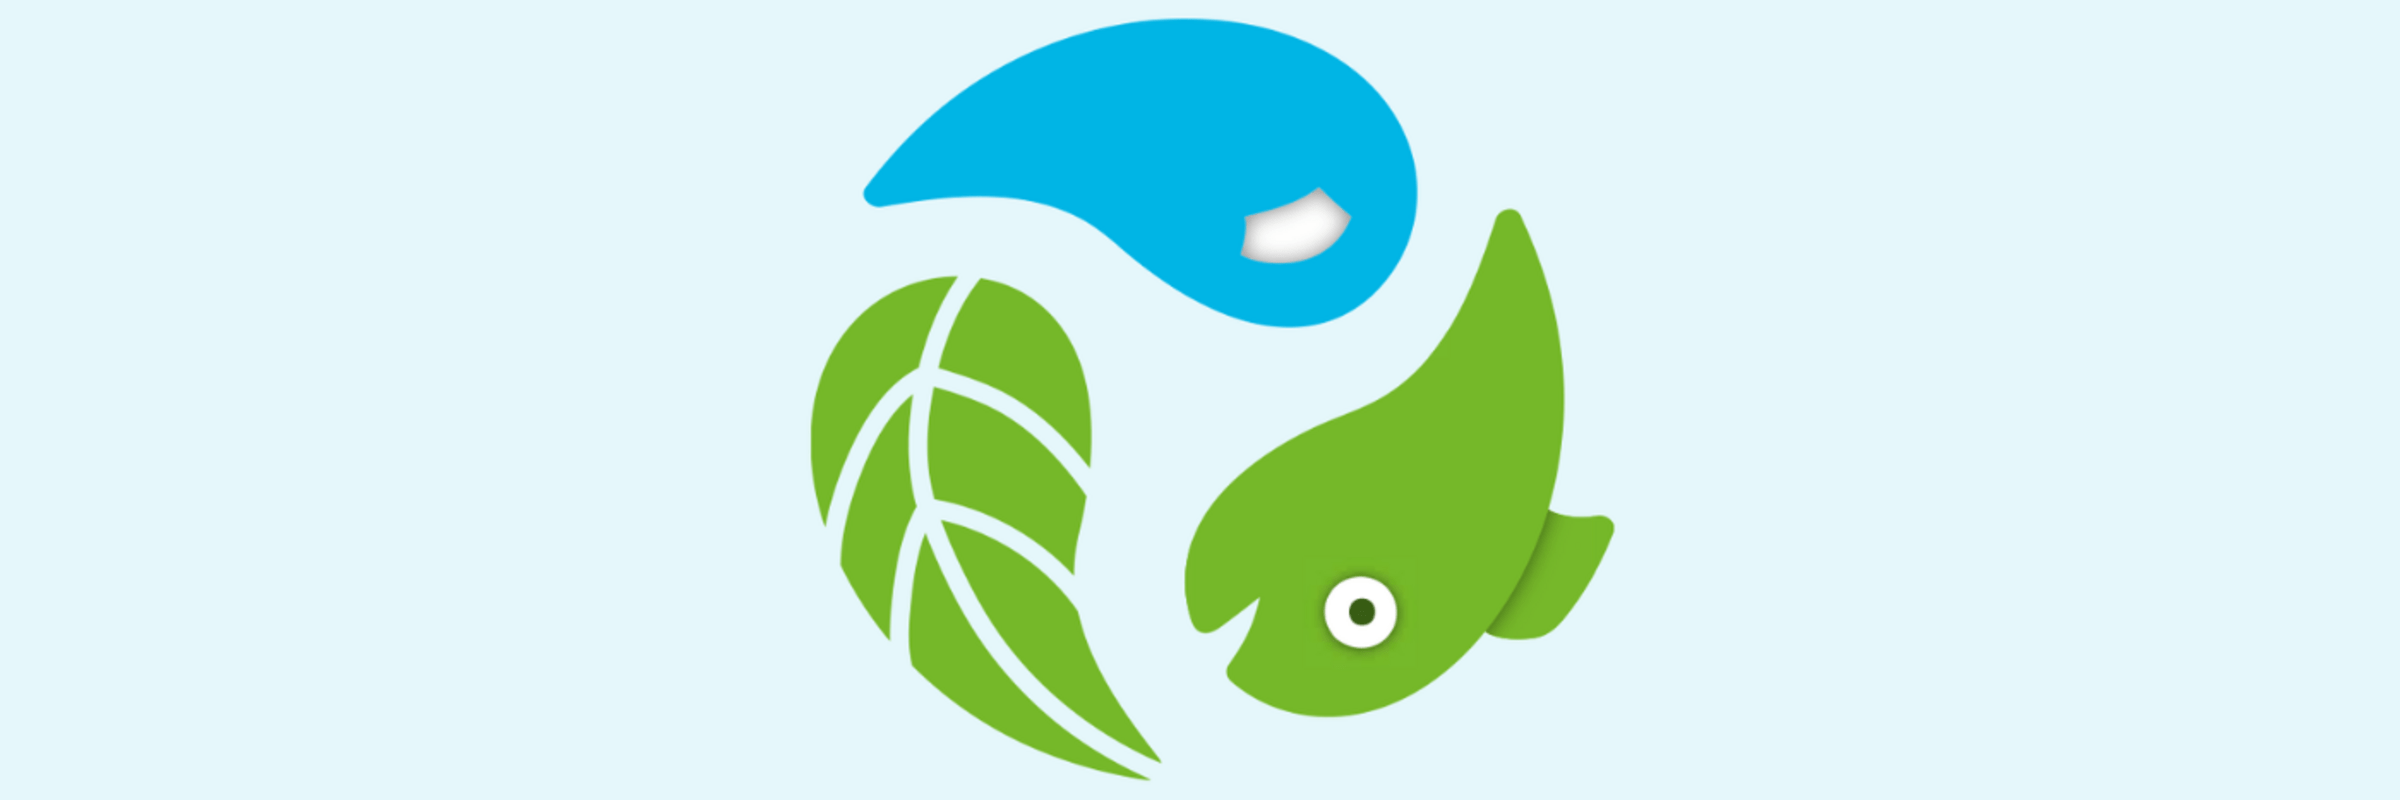 Ein grünes Blatt, ein grüner Fisch und ein blauer Wassertropfen bilden einen Kreis.